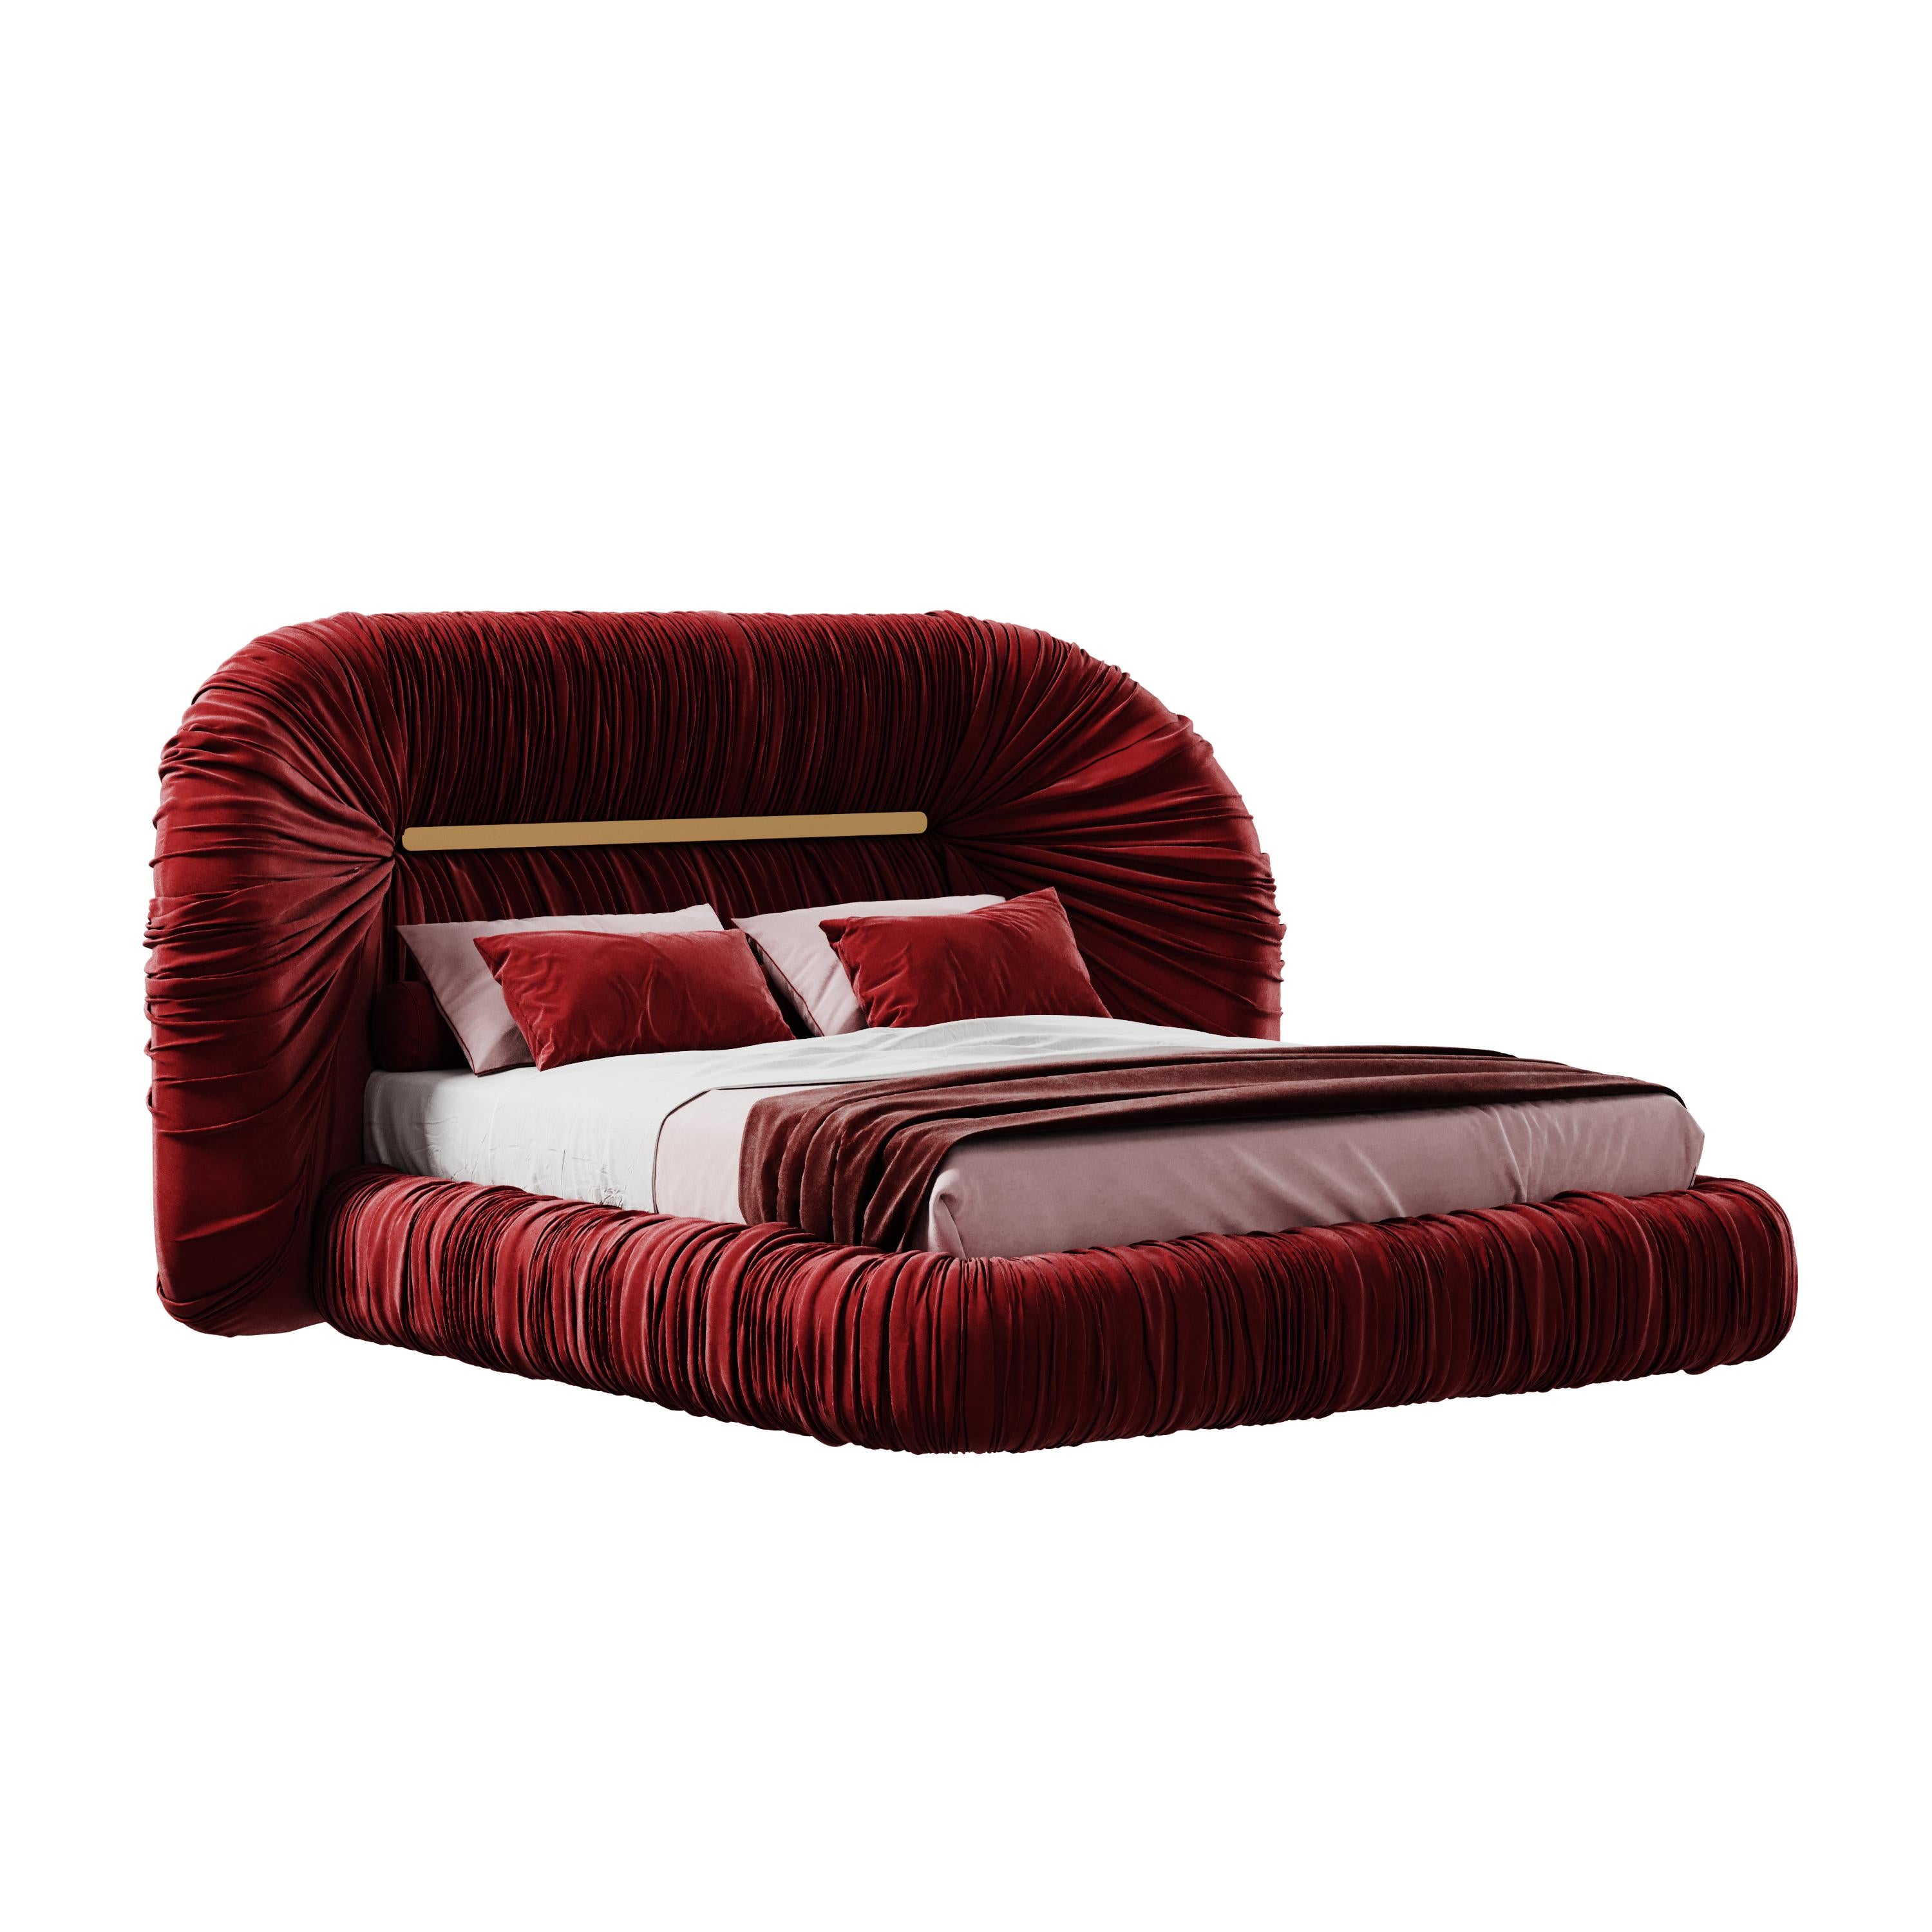 Mid-Century Modern-Inspired Tammi Bed Velvet by Ottiu For Sale 1